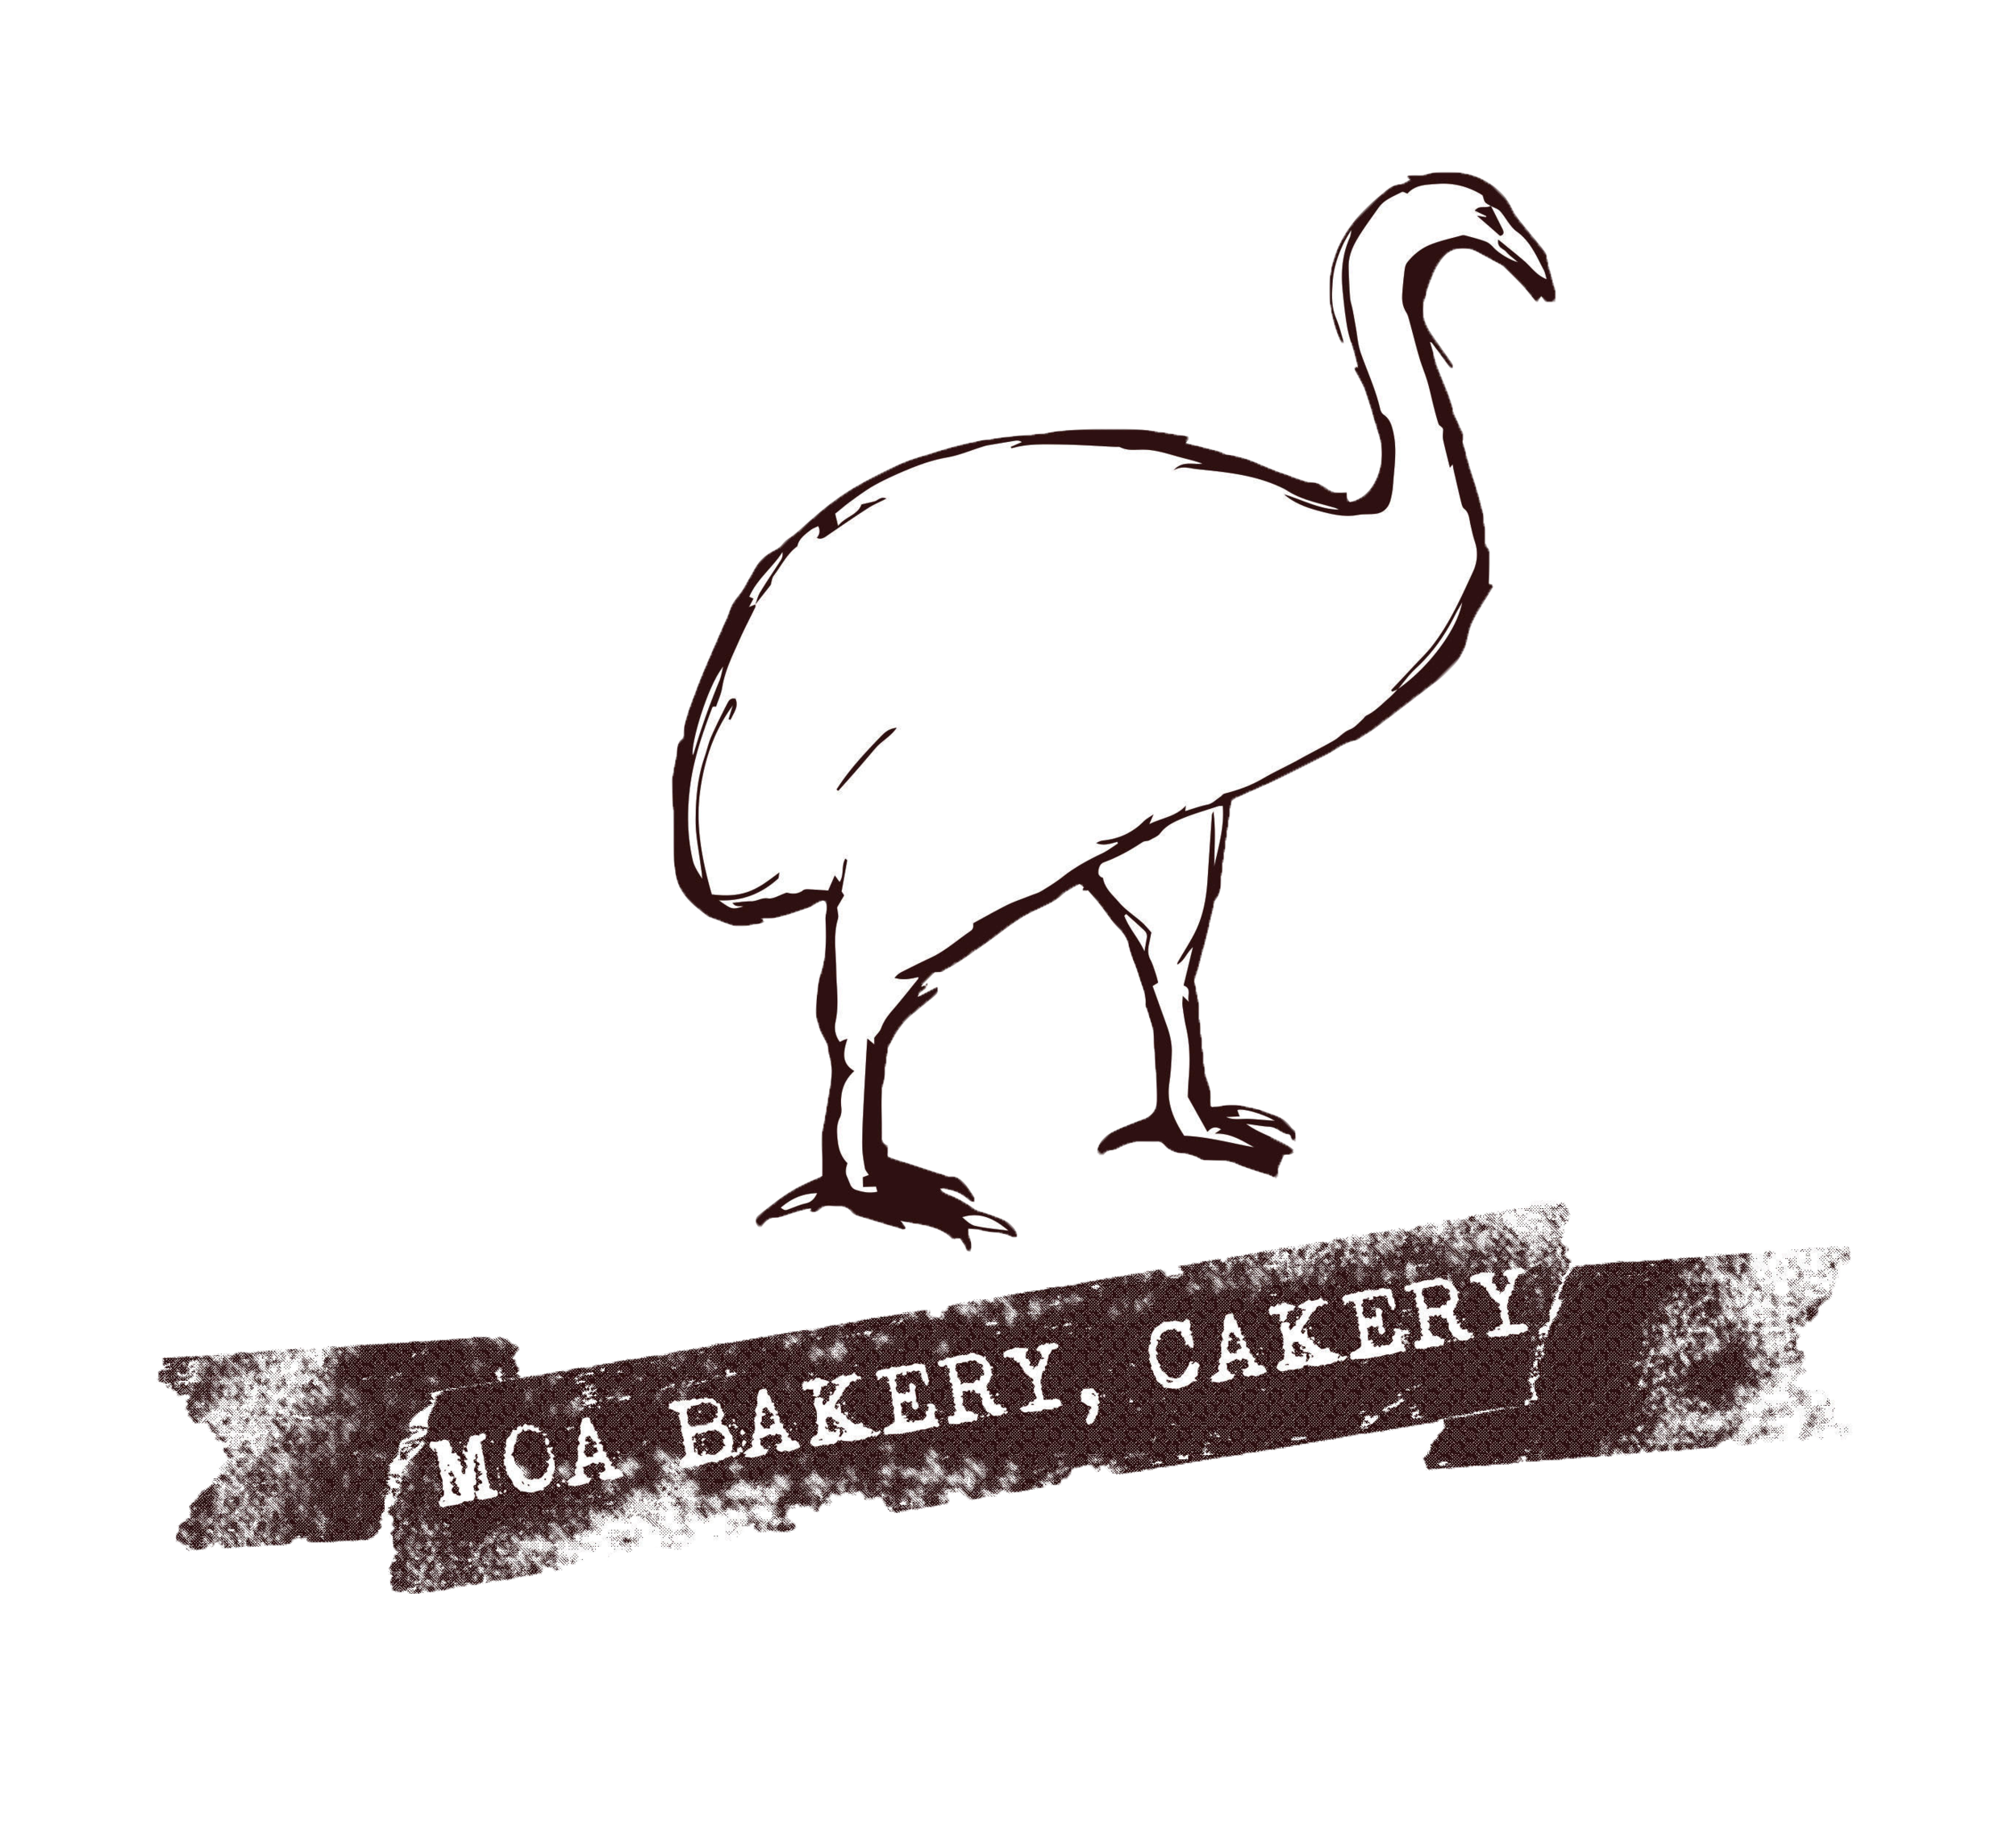 MOA Bakery, Cakery